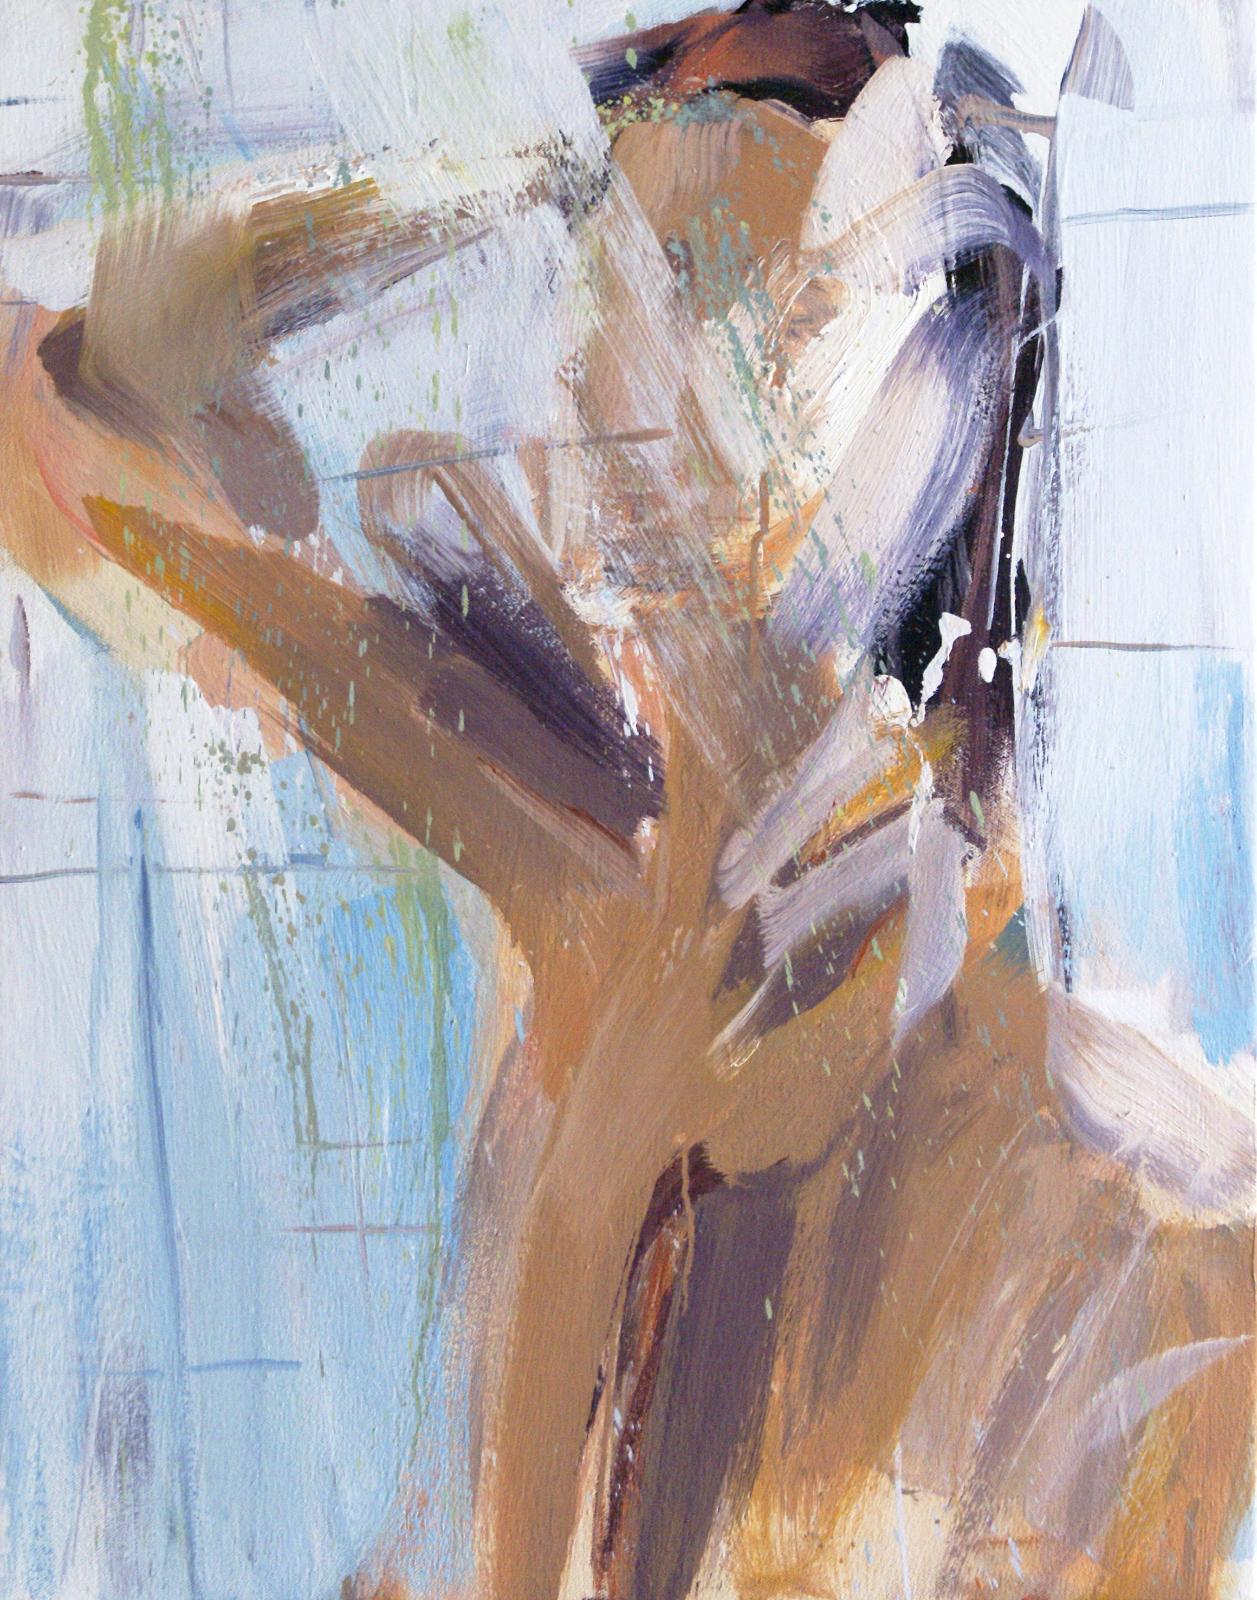 Alireza Varzandeh, shower, 2021, Öl auf Leinwand, 70 cm x 55 cm, Preis auf Anfrage, Galerie Cyprian Brenner